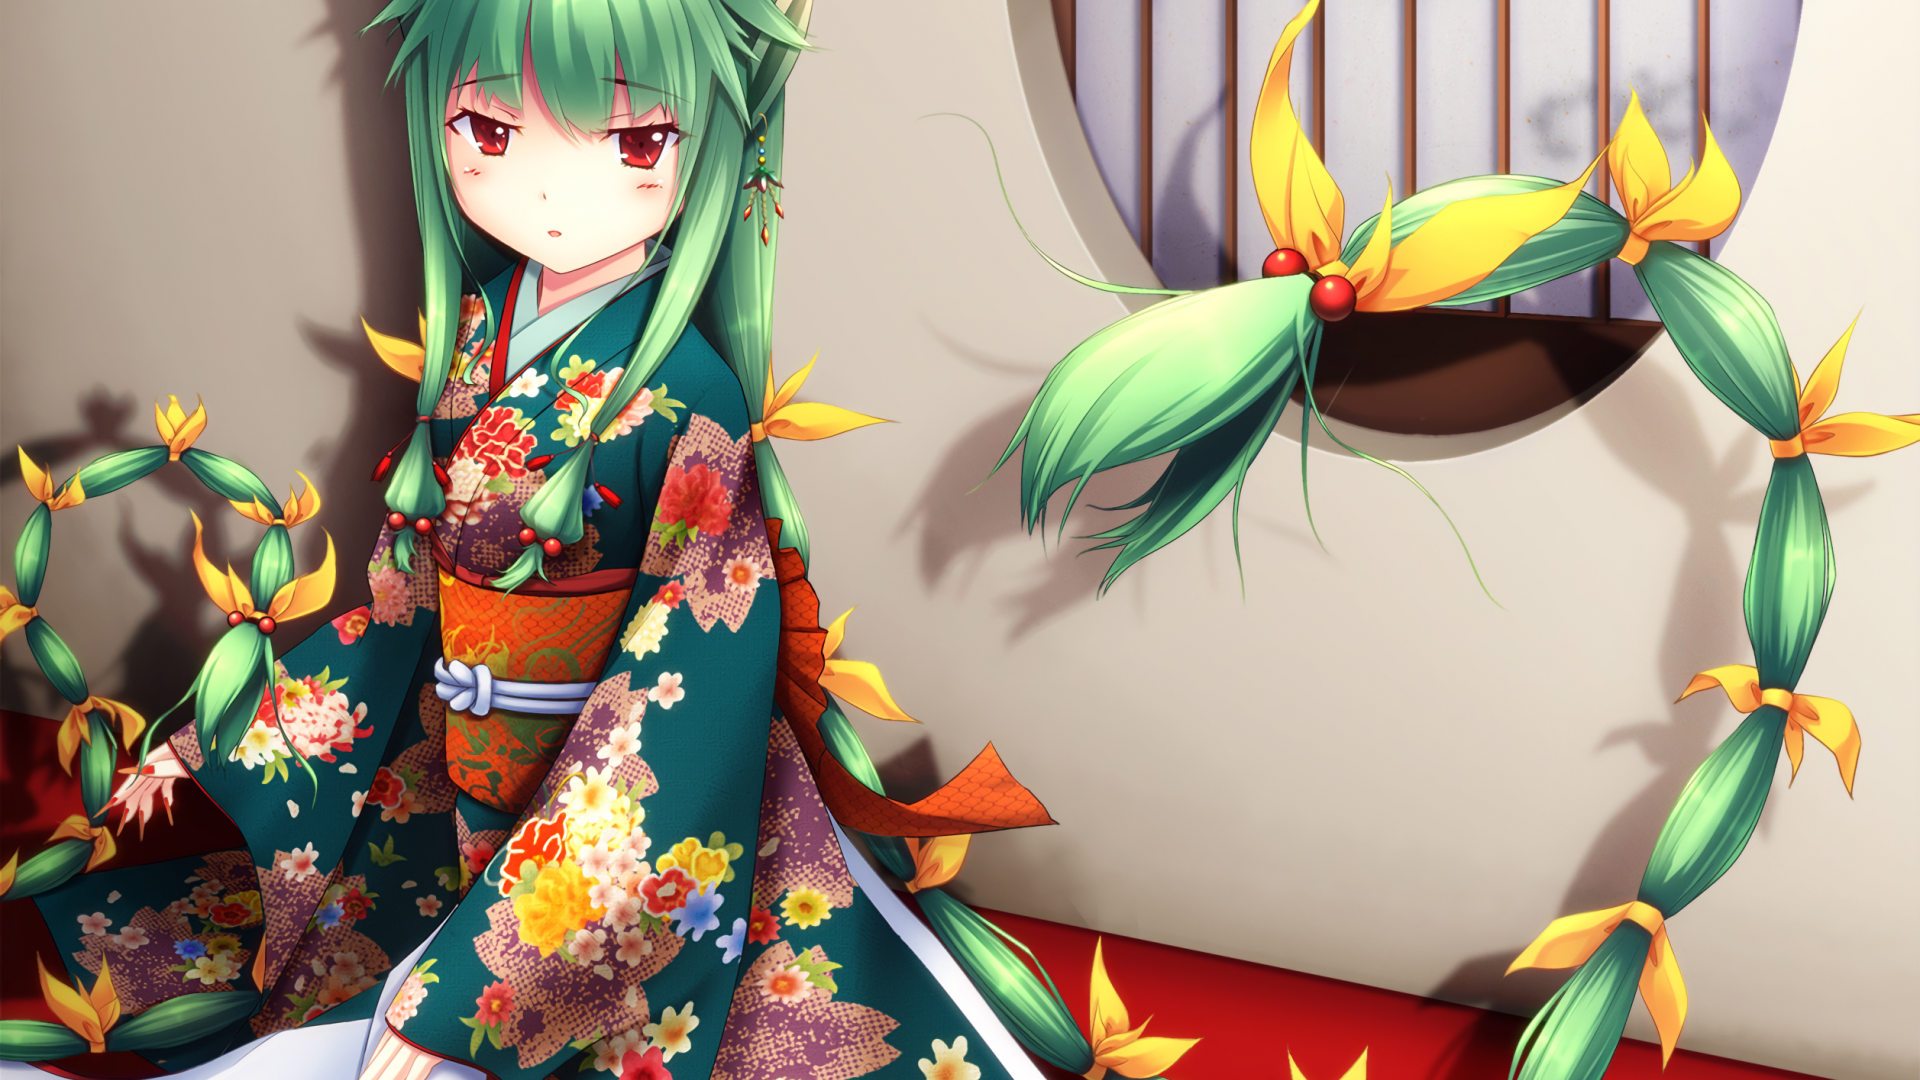 Зеленое кимоно